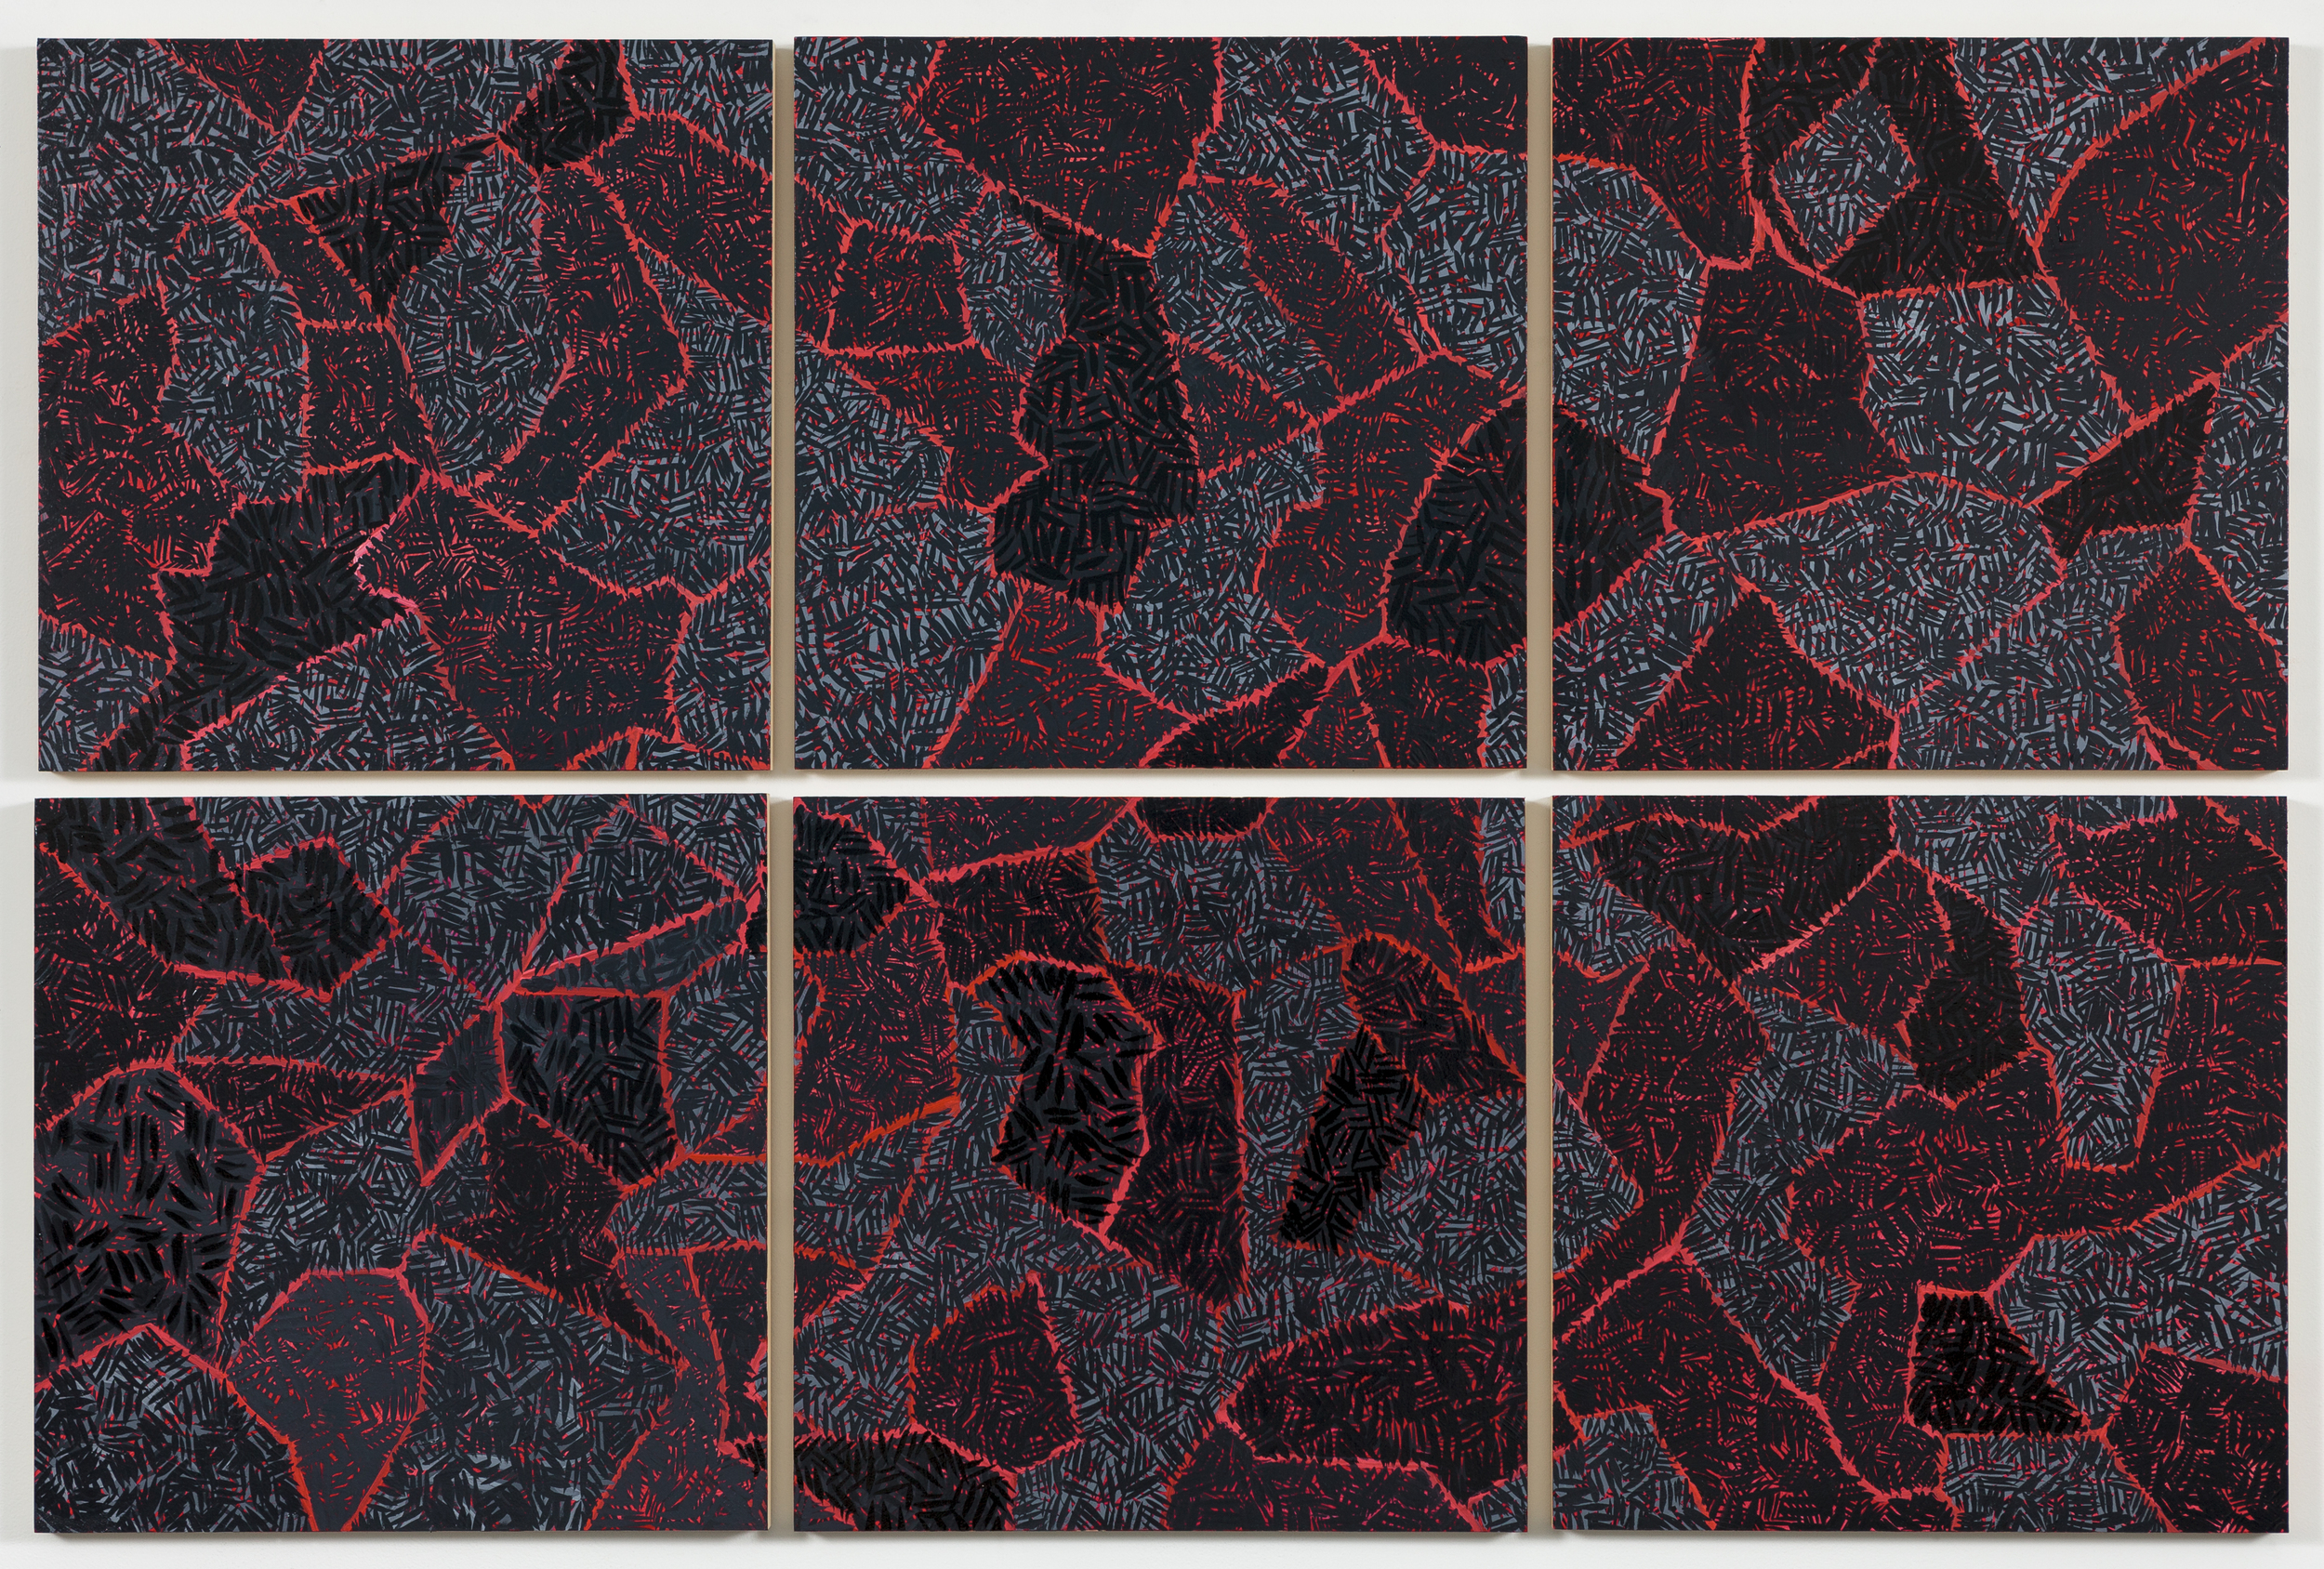    Grid V, &nbsp;2015   Oil on paper mounted on panel, 6&nbsp;- 18"&nbsp;X 18" panels   37” X 55"  